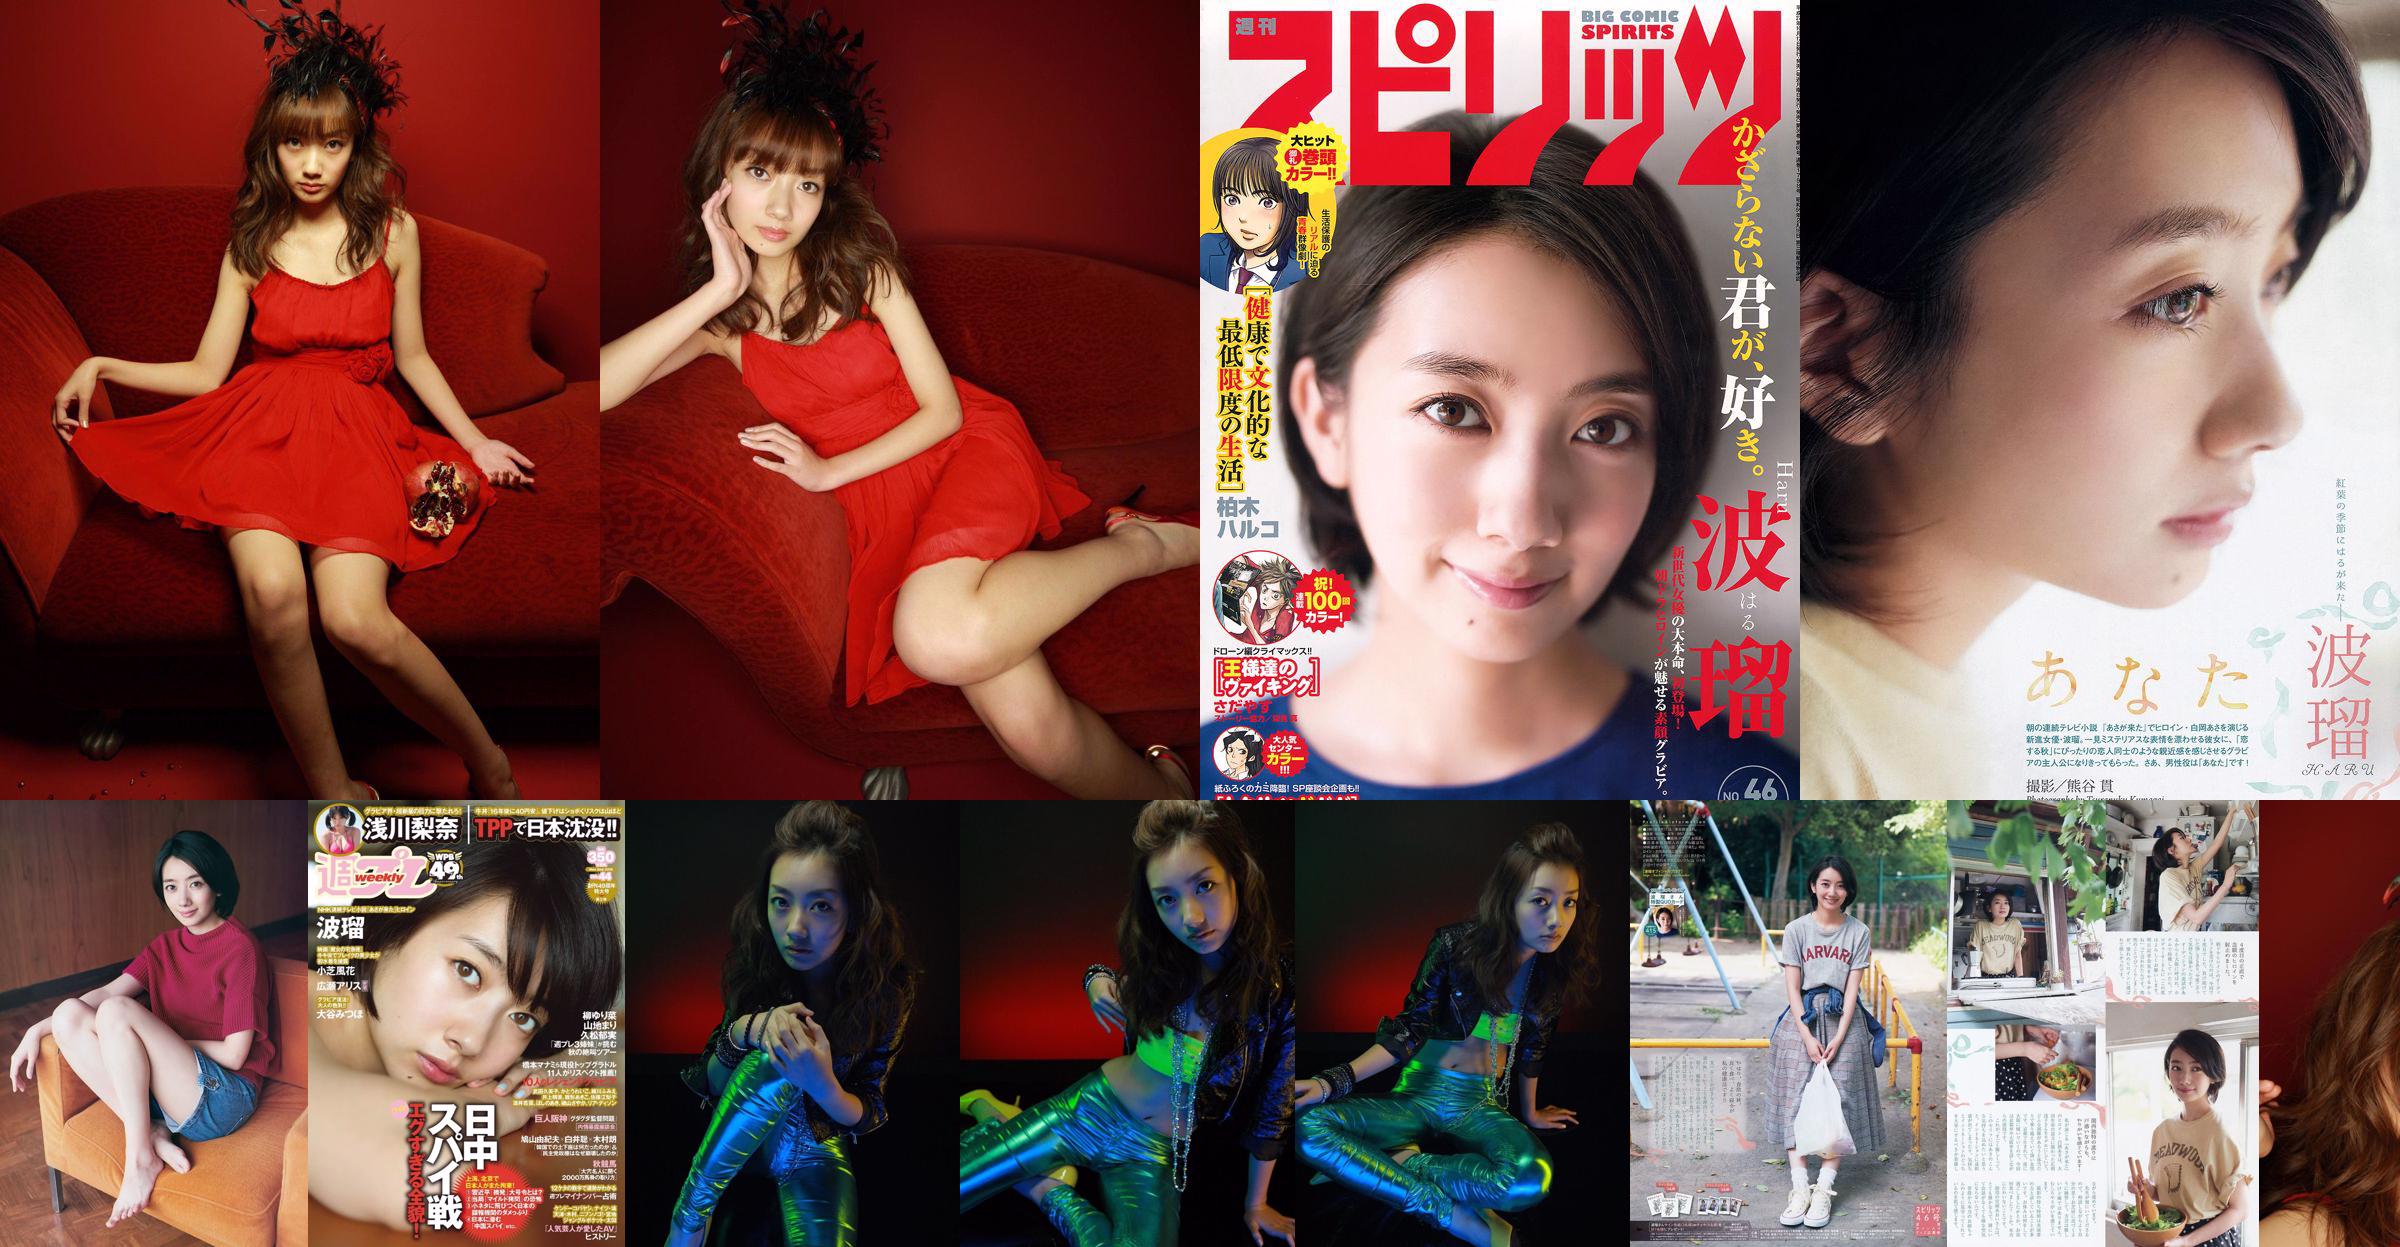 Nanboru "Super Beautiful Girl-Boru vecht voor het eerst in diepdruk" [Sabra.net] No.118750 Pagina 4